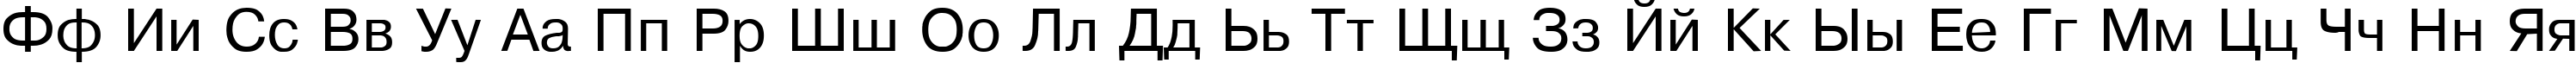 Пример написания английского алфавита шрифтом CompactBook